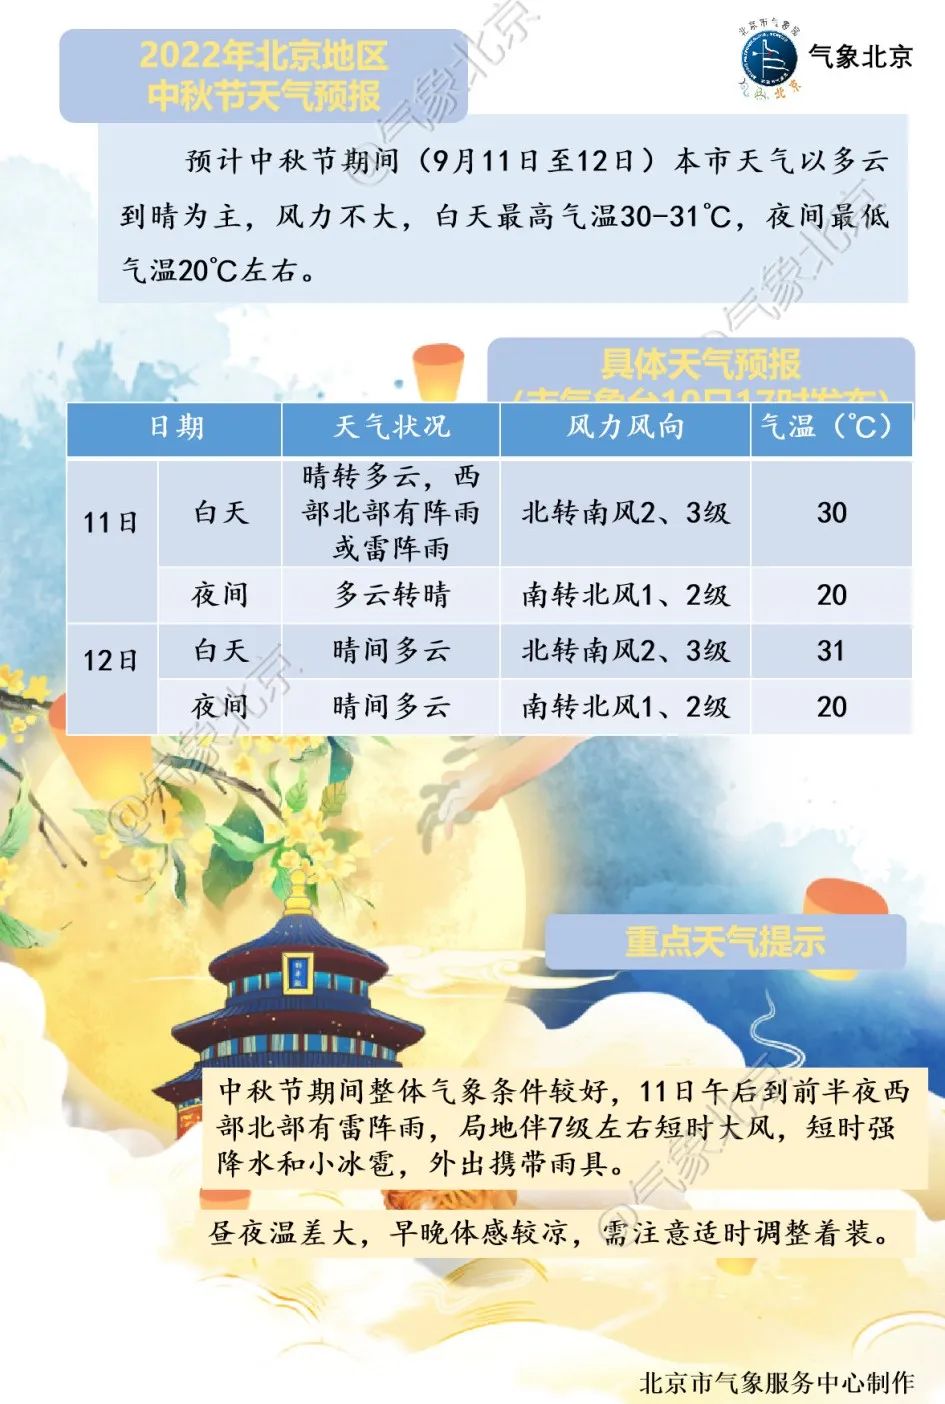 赏月请注意 今夜北京西部北部仍有雷雨 局地大风 冰雹